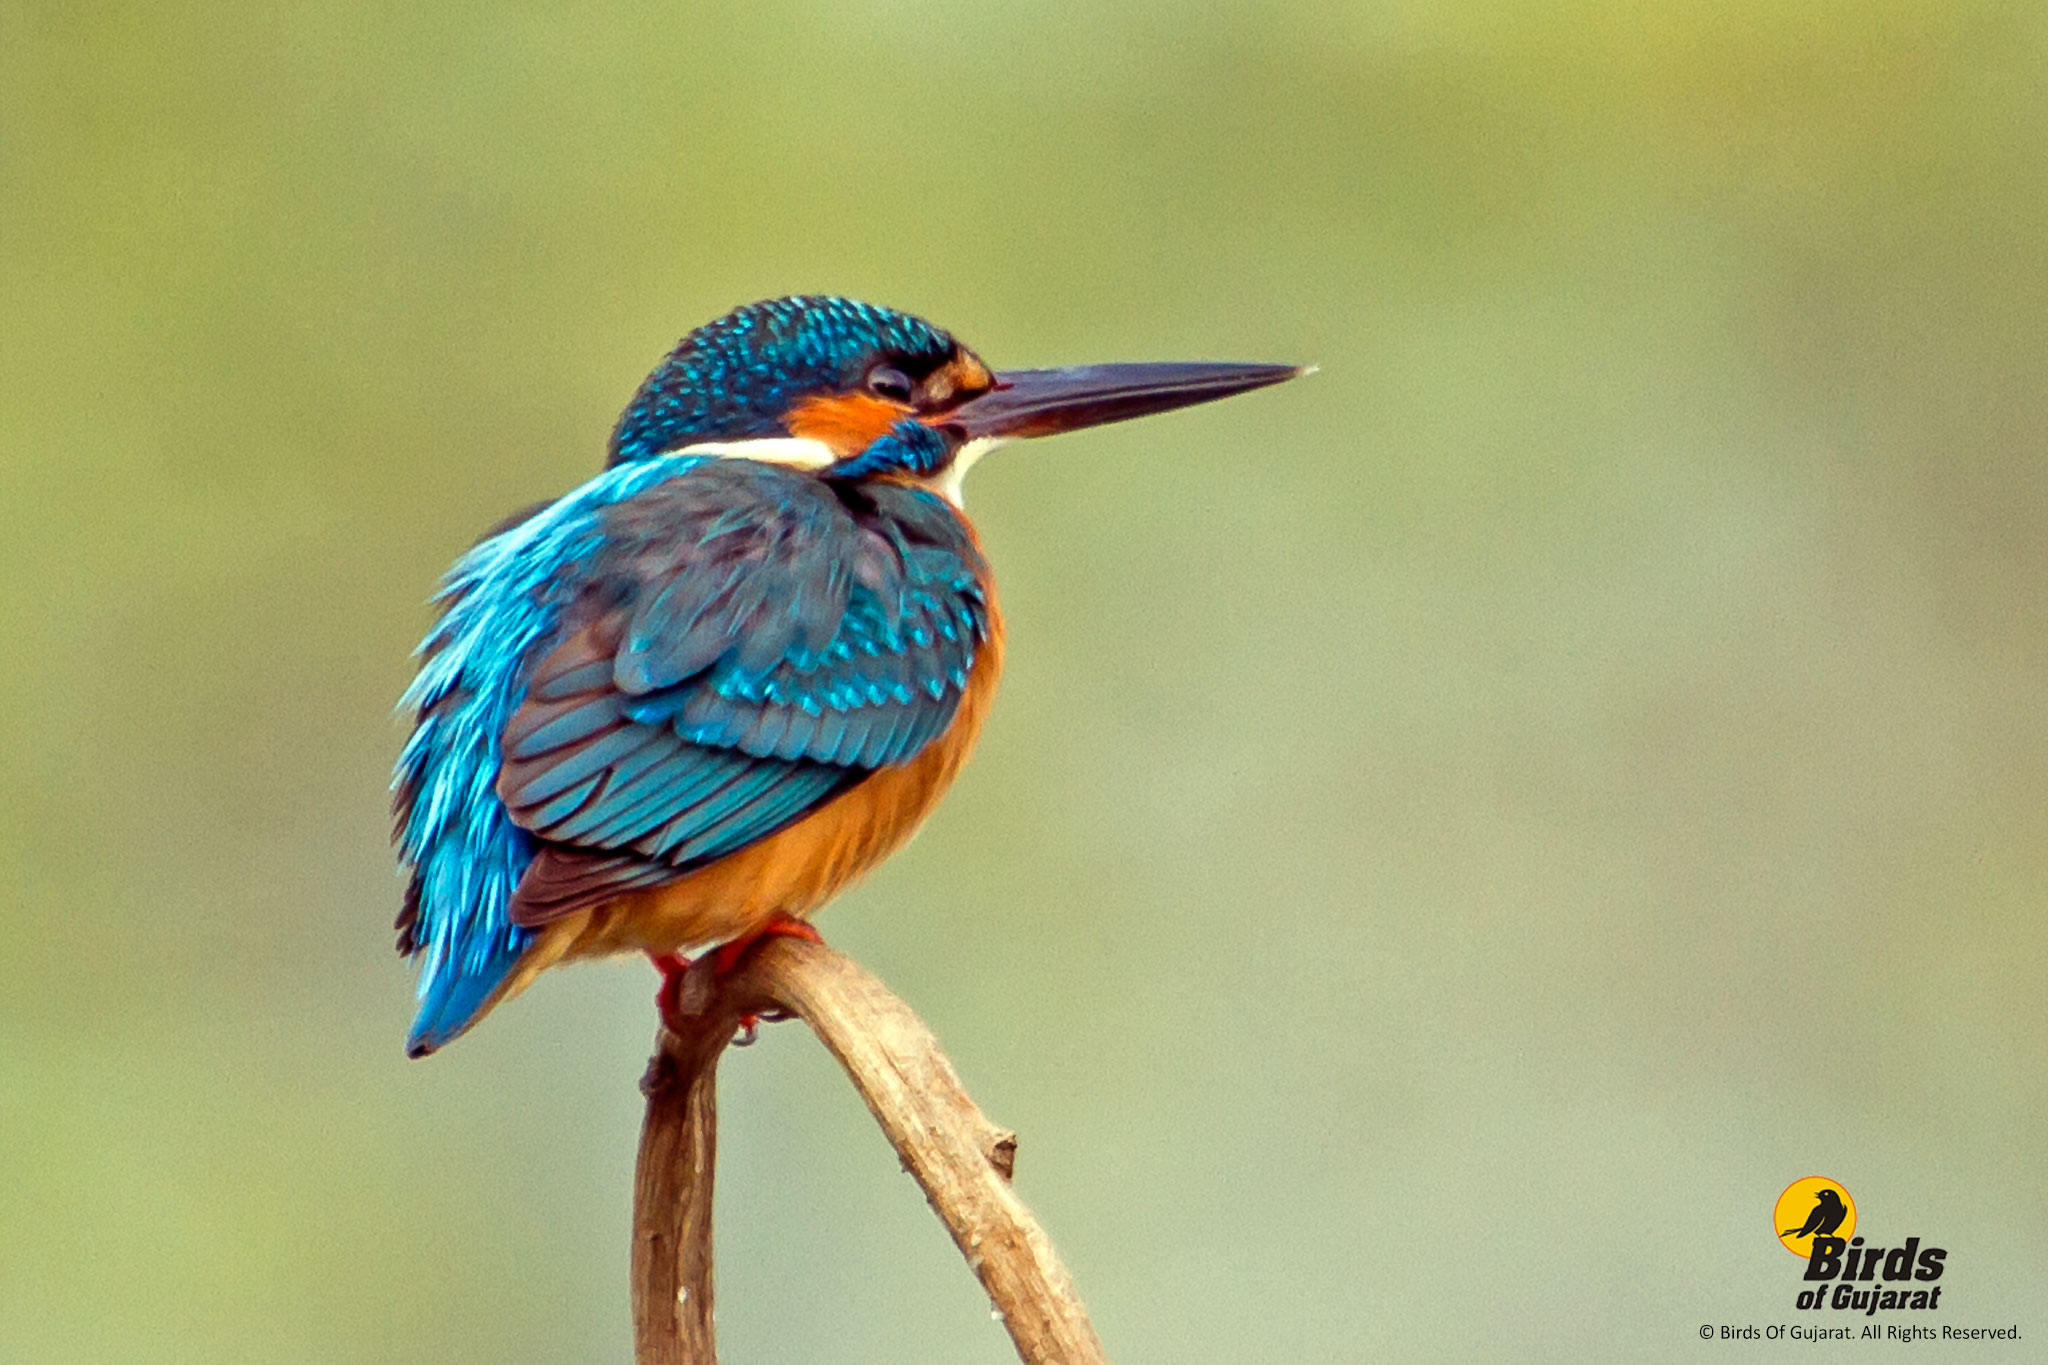 Common Kingfisher (Alcedo atthis) | Birds of Gujarat Online